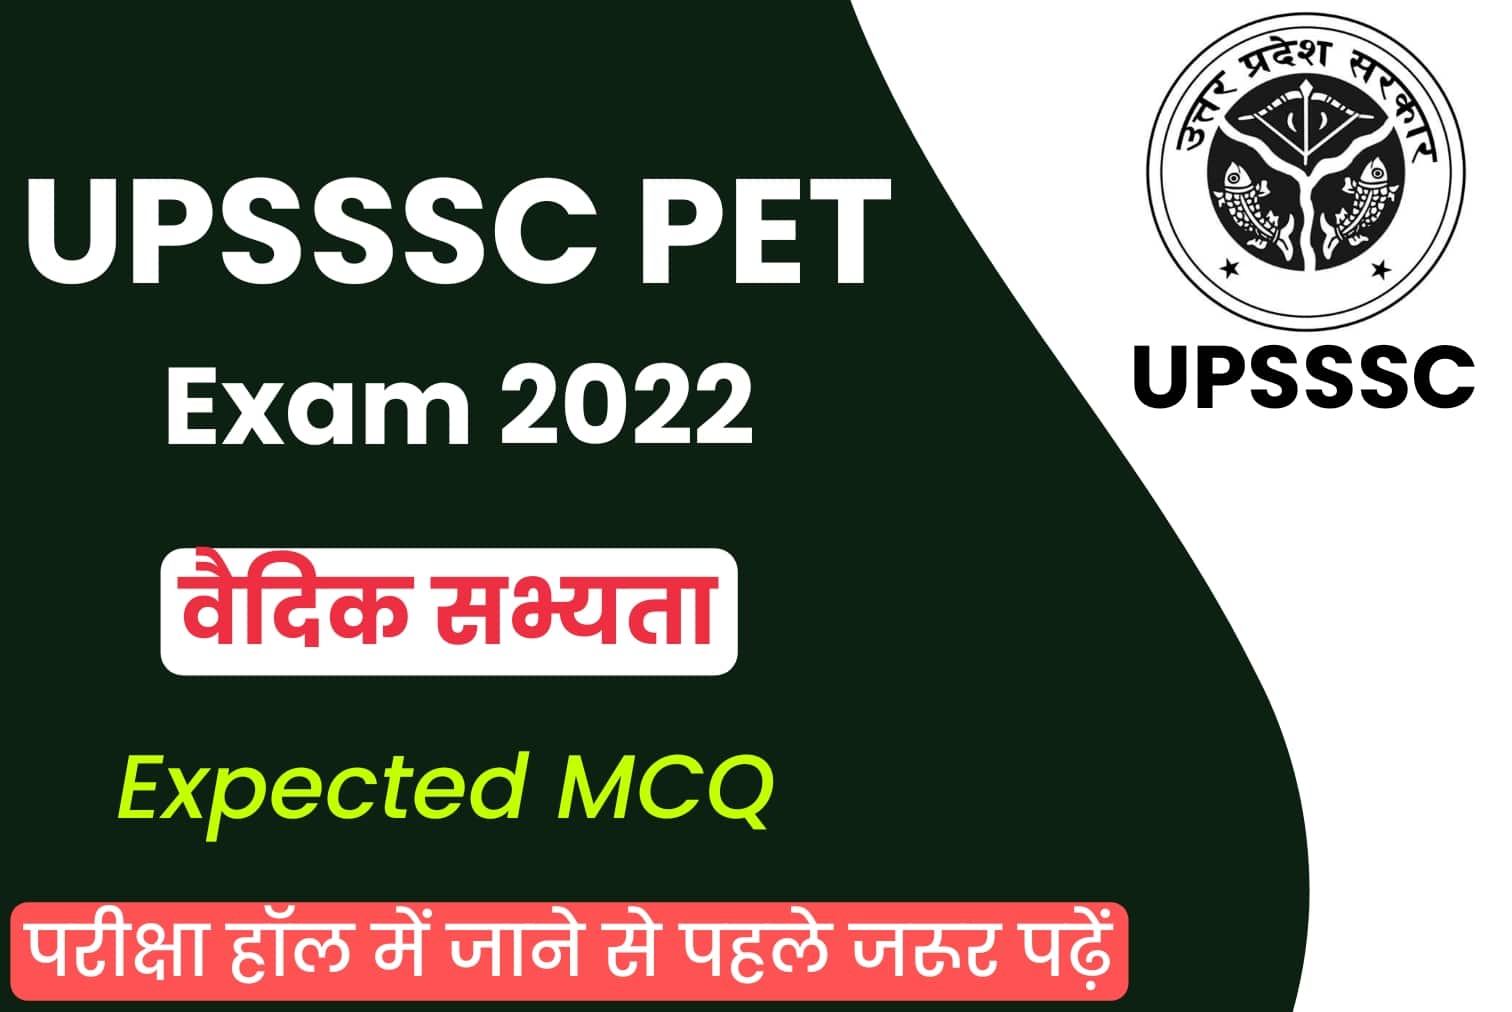 UPSSSC PET Exam 2022 :  ‘वैदिक सभ्यता’ से जुड़े कुछ ऐसे सवाल पूछे जाएंगे UP PET परीक्षा में